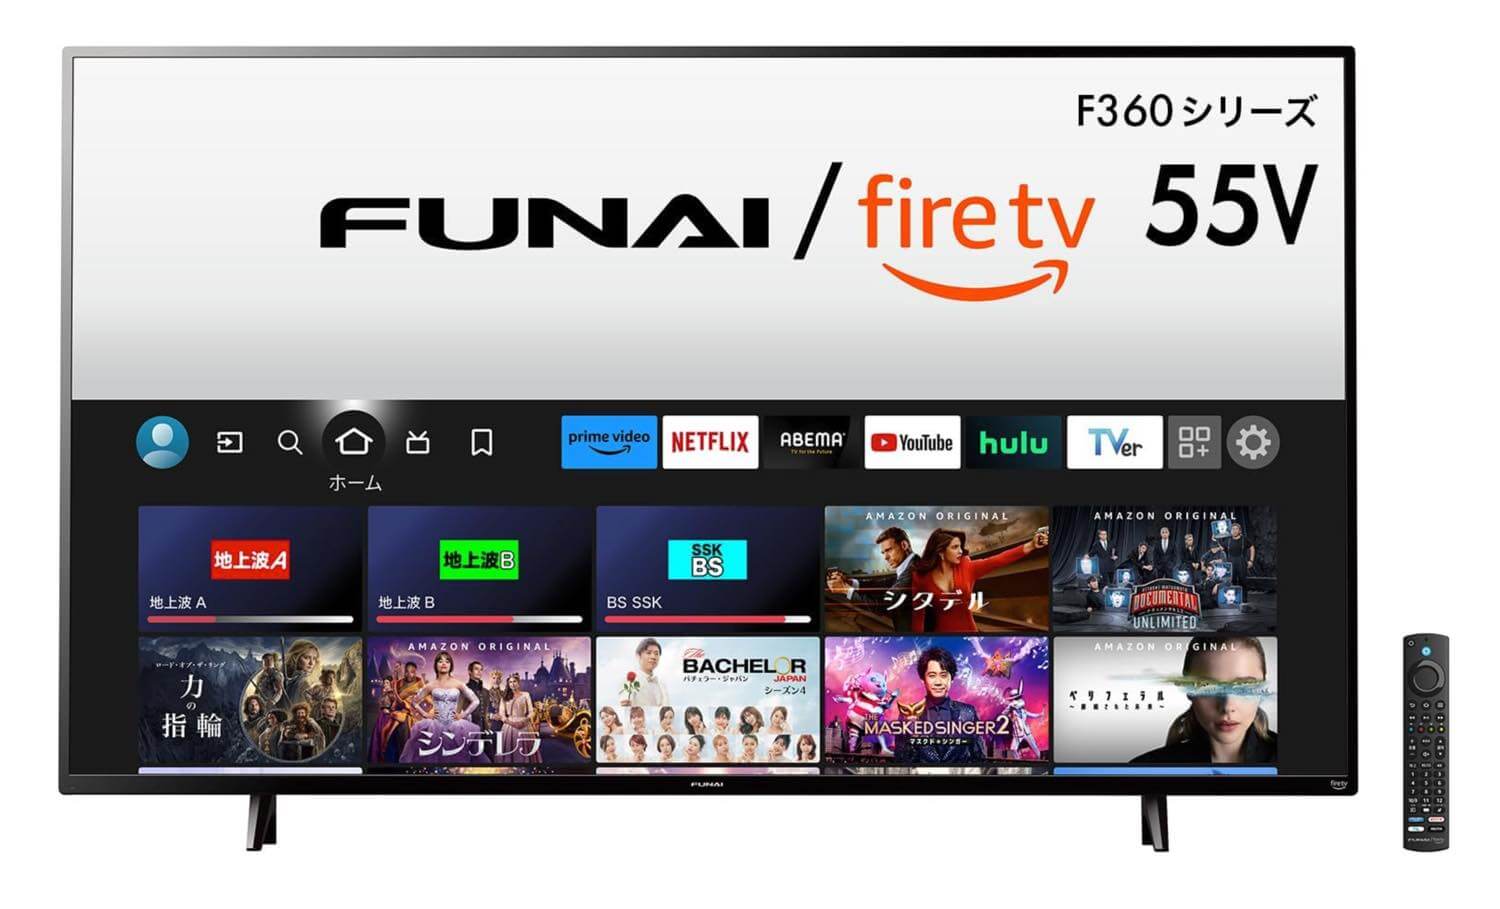 Amazonとヤマダ、｢FUNAI Fire TV搭載スマートテレビ｣の新モデルを発表 ｰ バスレフスピーカー搭載やリモコン刷新など